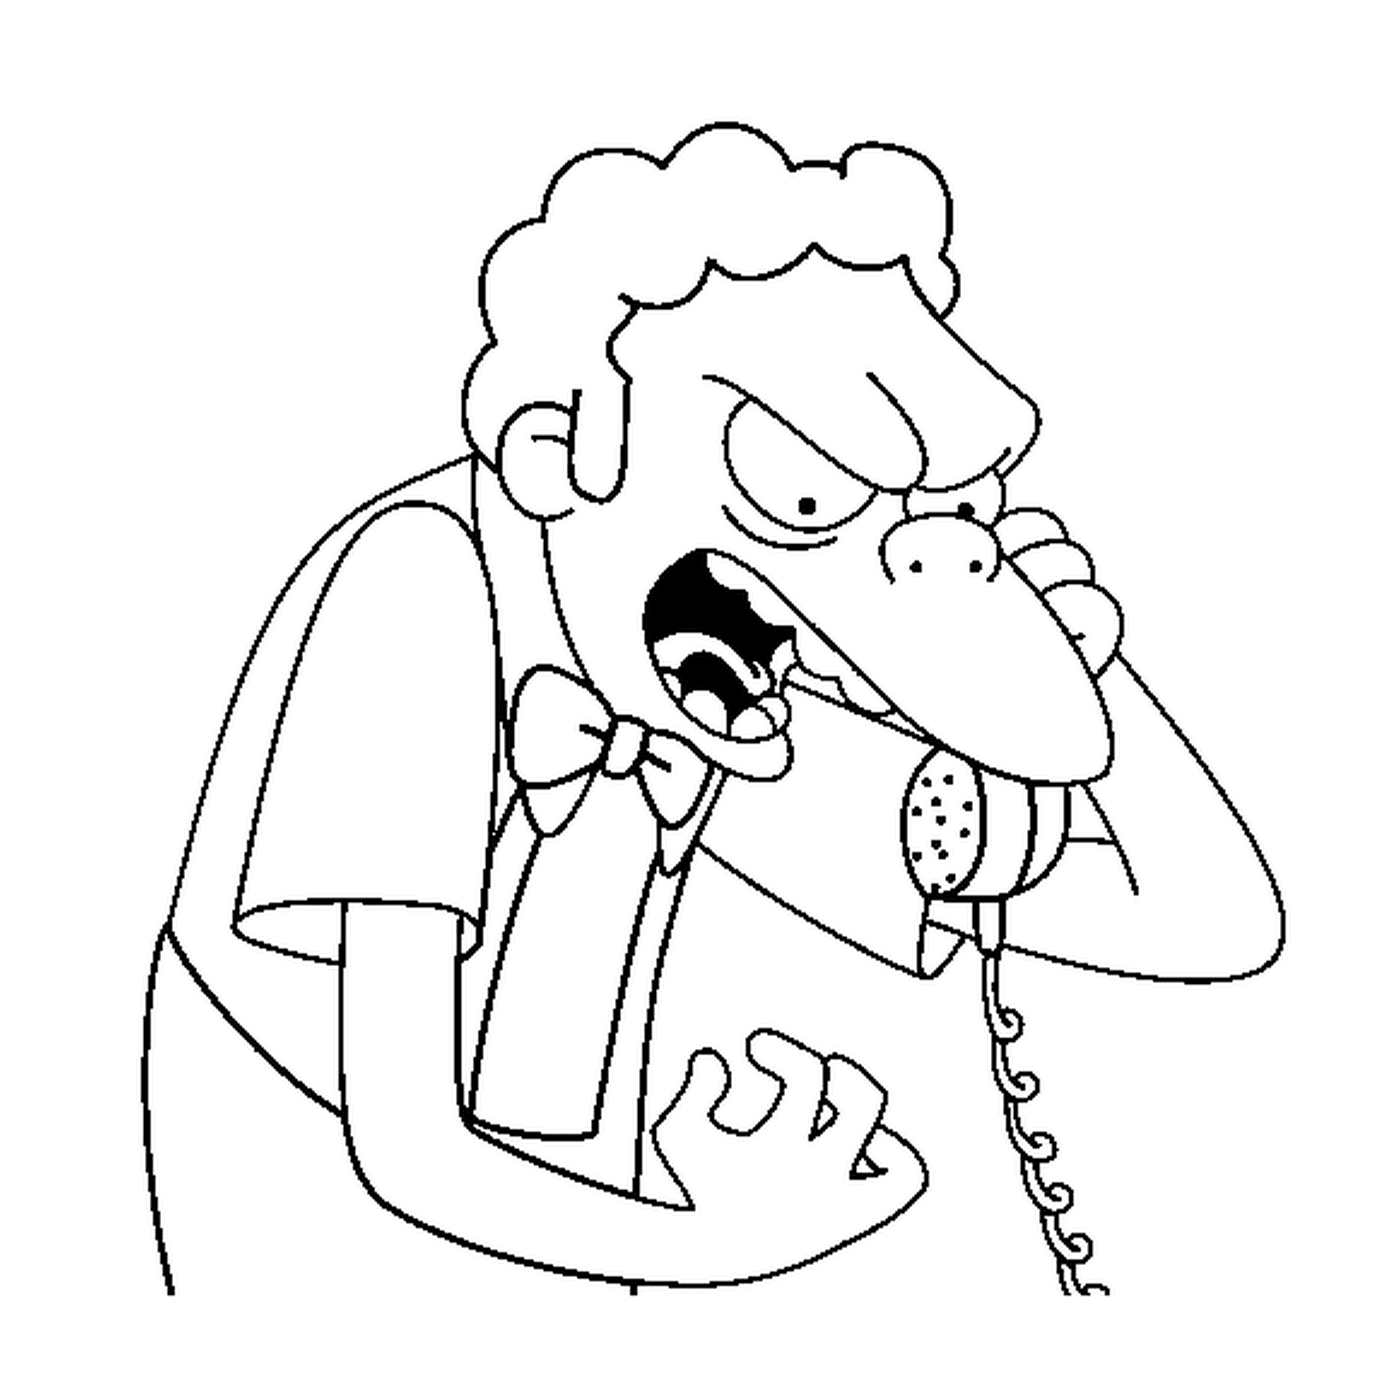   Moe s'énerve au téléphone 